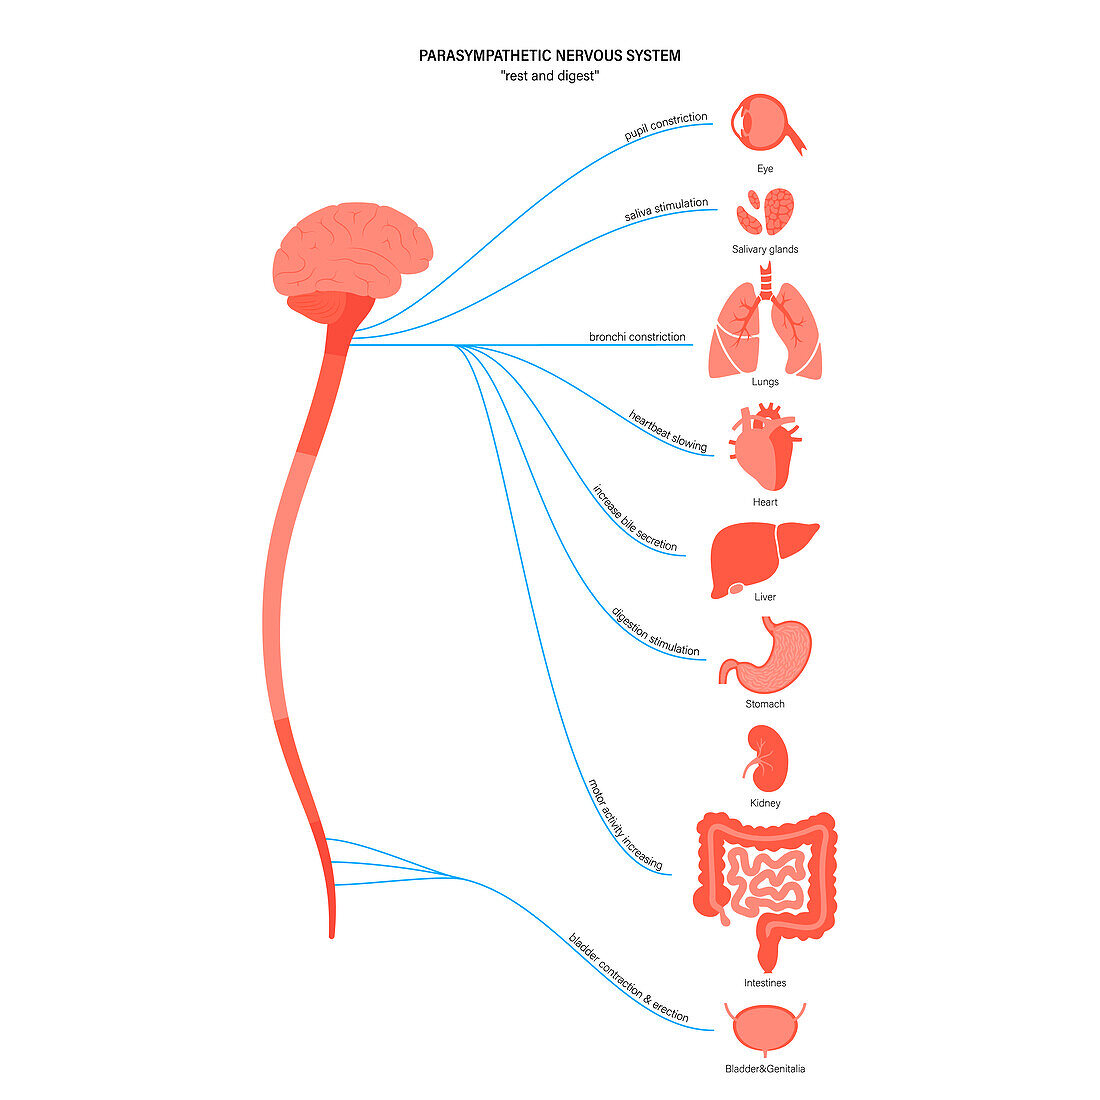 Parasympathetic nervous system, illustration